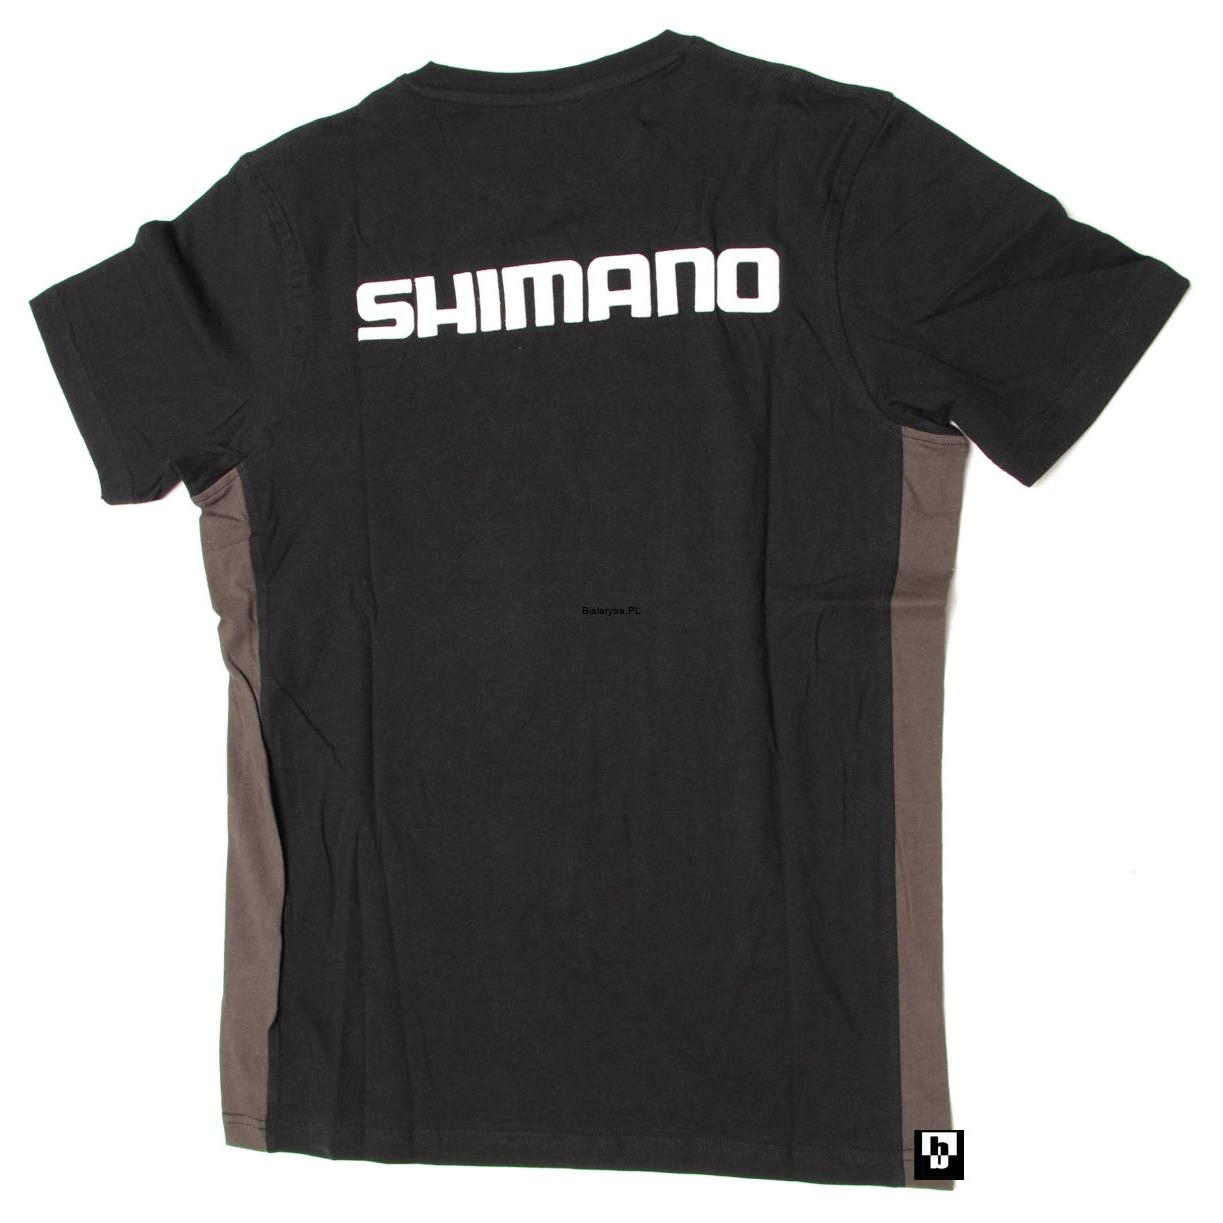 Koszulka Shimano T-shirt Black XL model 2020, SHSHIRT20BLXL